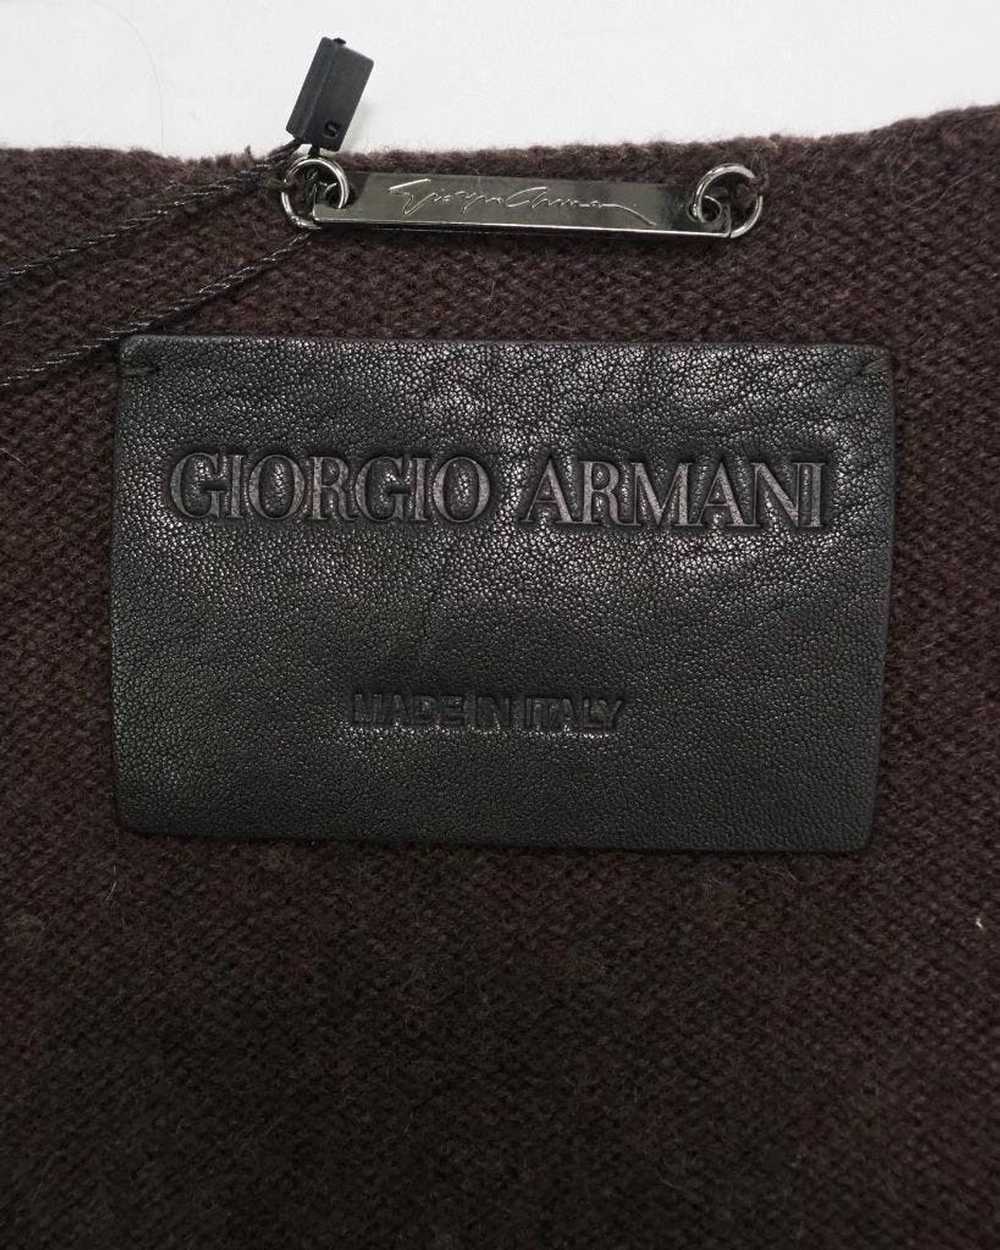 Giorgio Armani Giorgio Armani Leather and Cashmer… - image 5